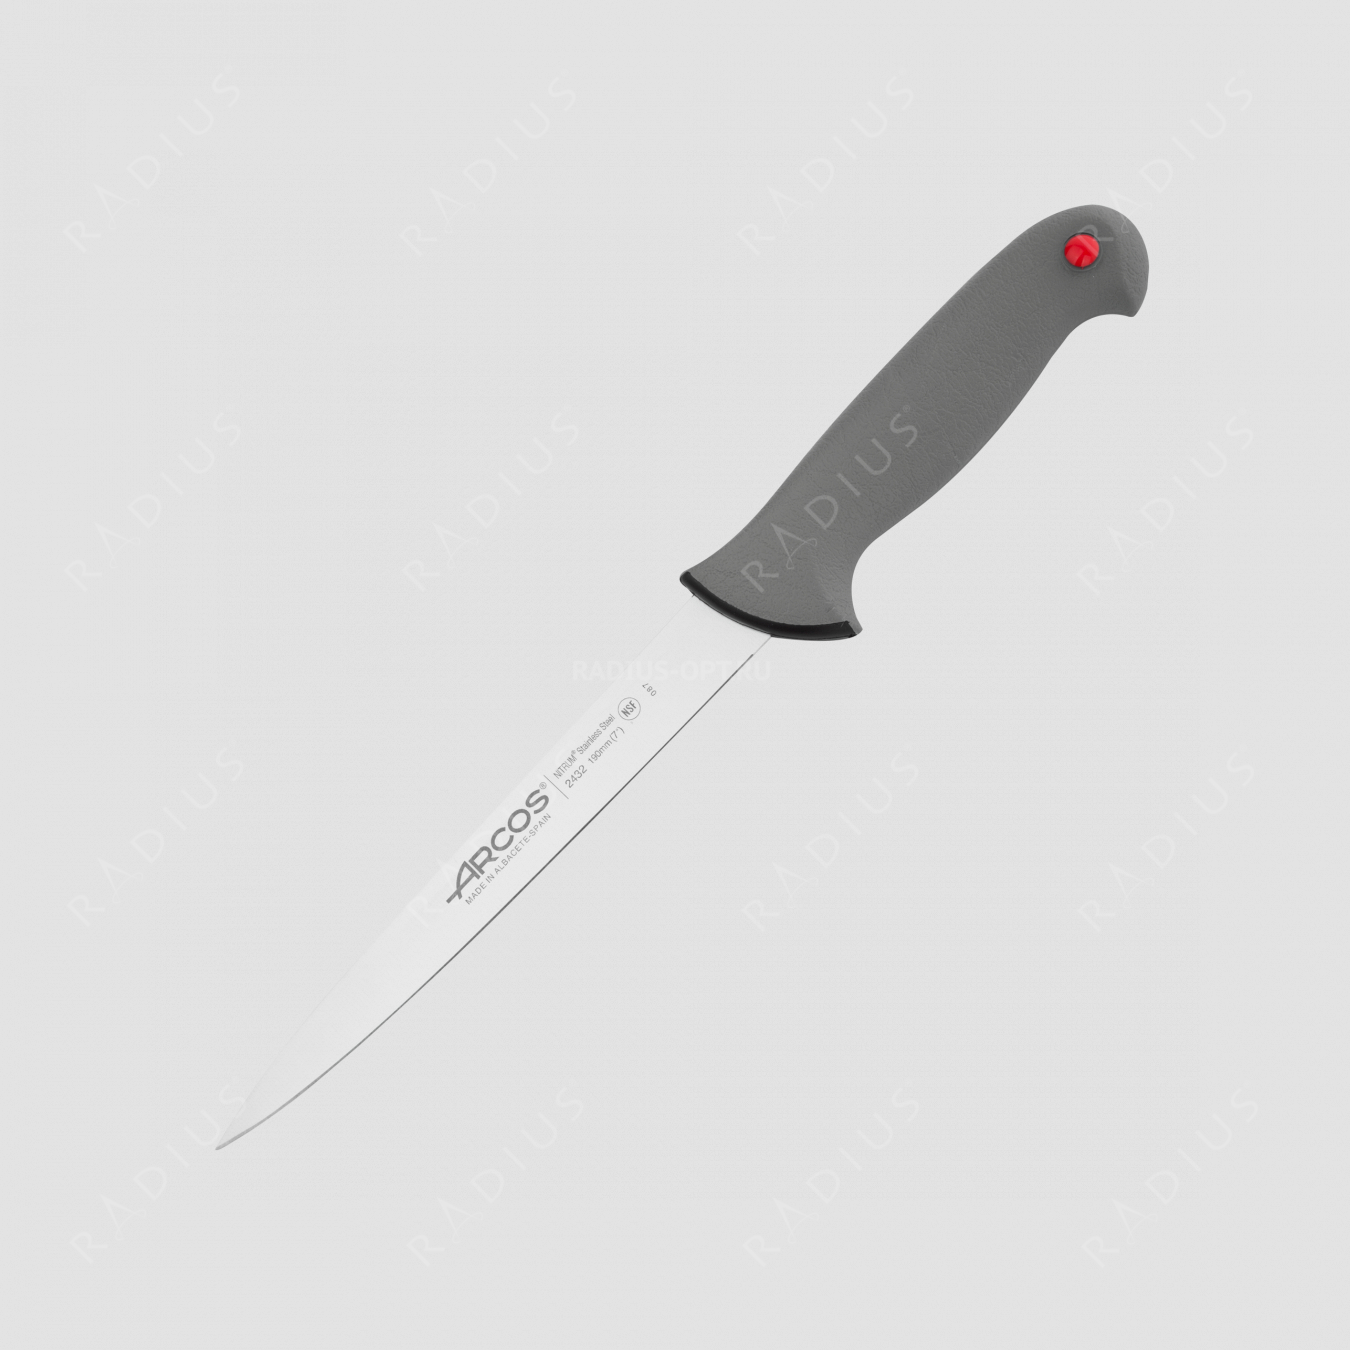 Нож кухонный разделочный 19 см, серия Colour-prof, ARCOS, Испания